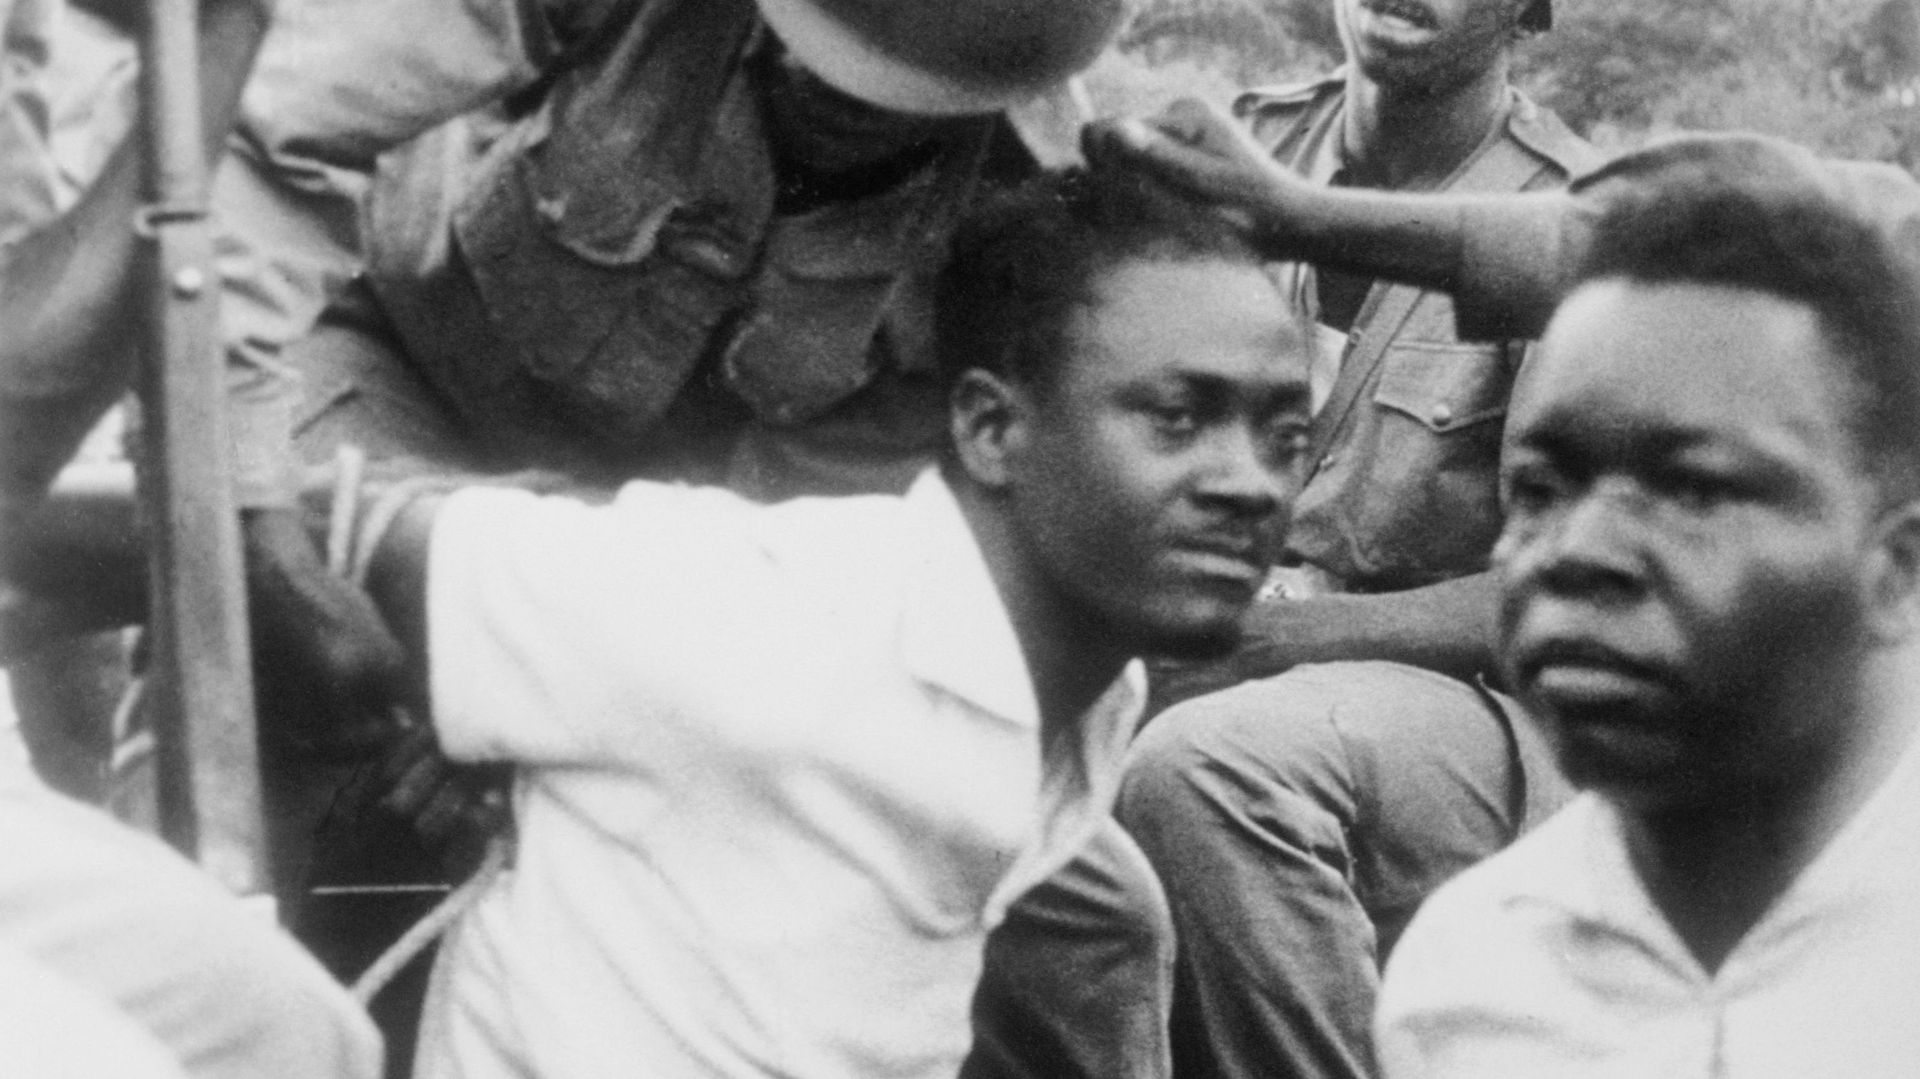 Léopoldville, Congo, 6 décembre 1960 : ses bras attachés derrière lui, le Premier ministre congolais évincé Patrice Lumumba est brutalement manipulé par des soldats.